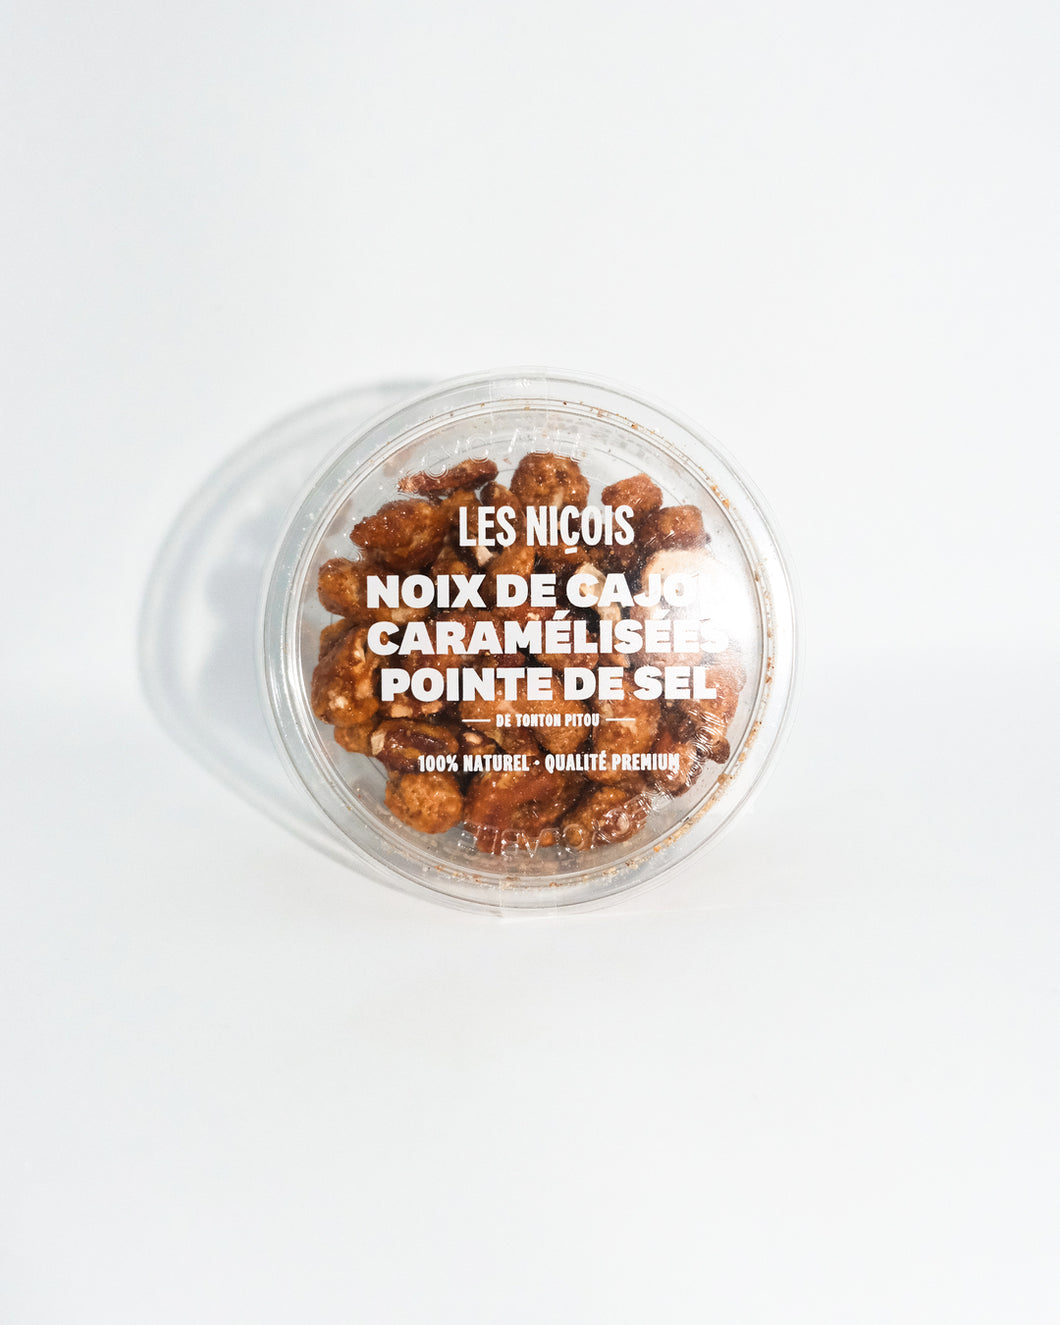 Caramelized cashew nuts & Fleur de sel